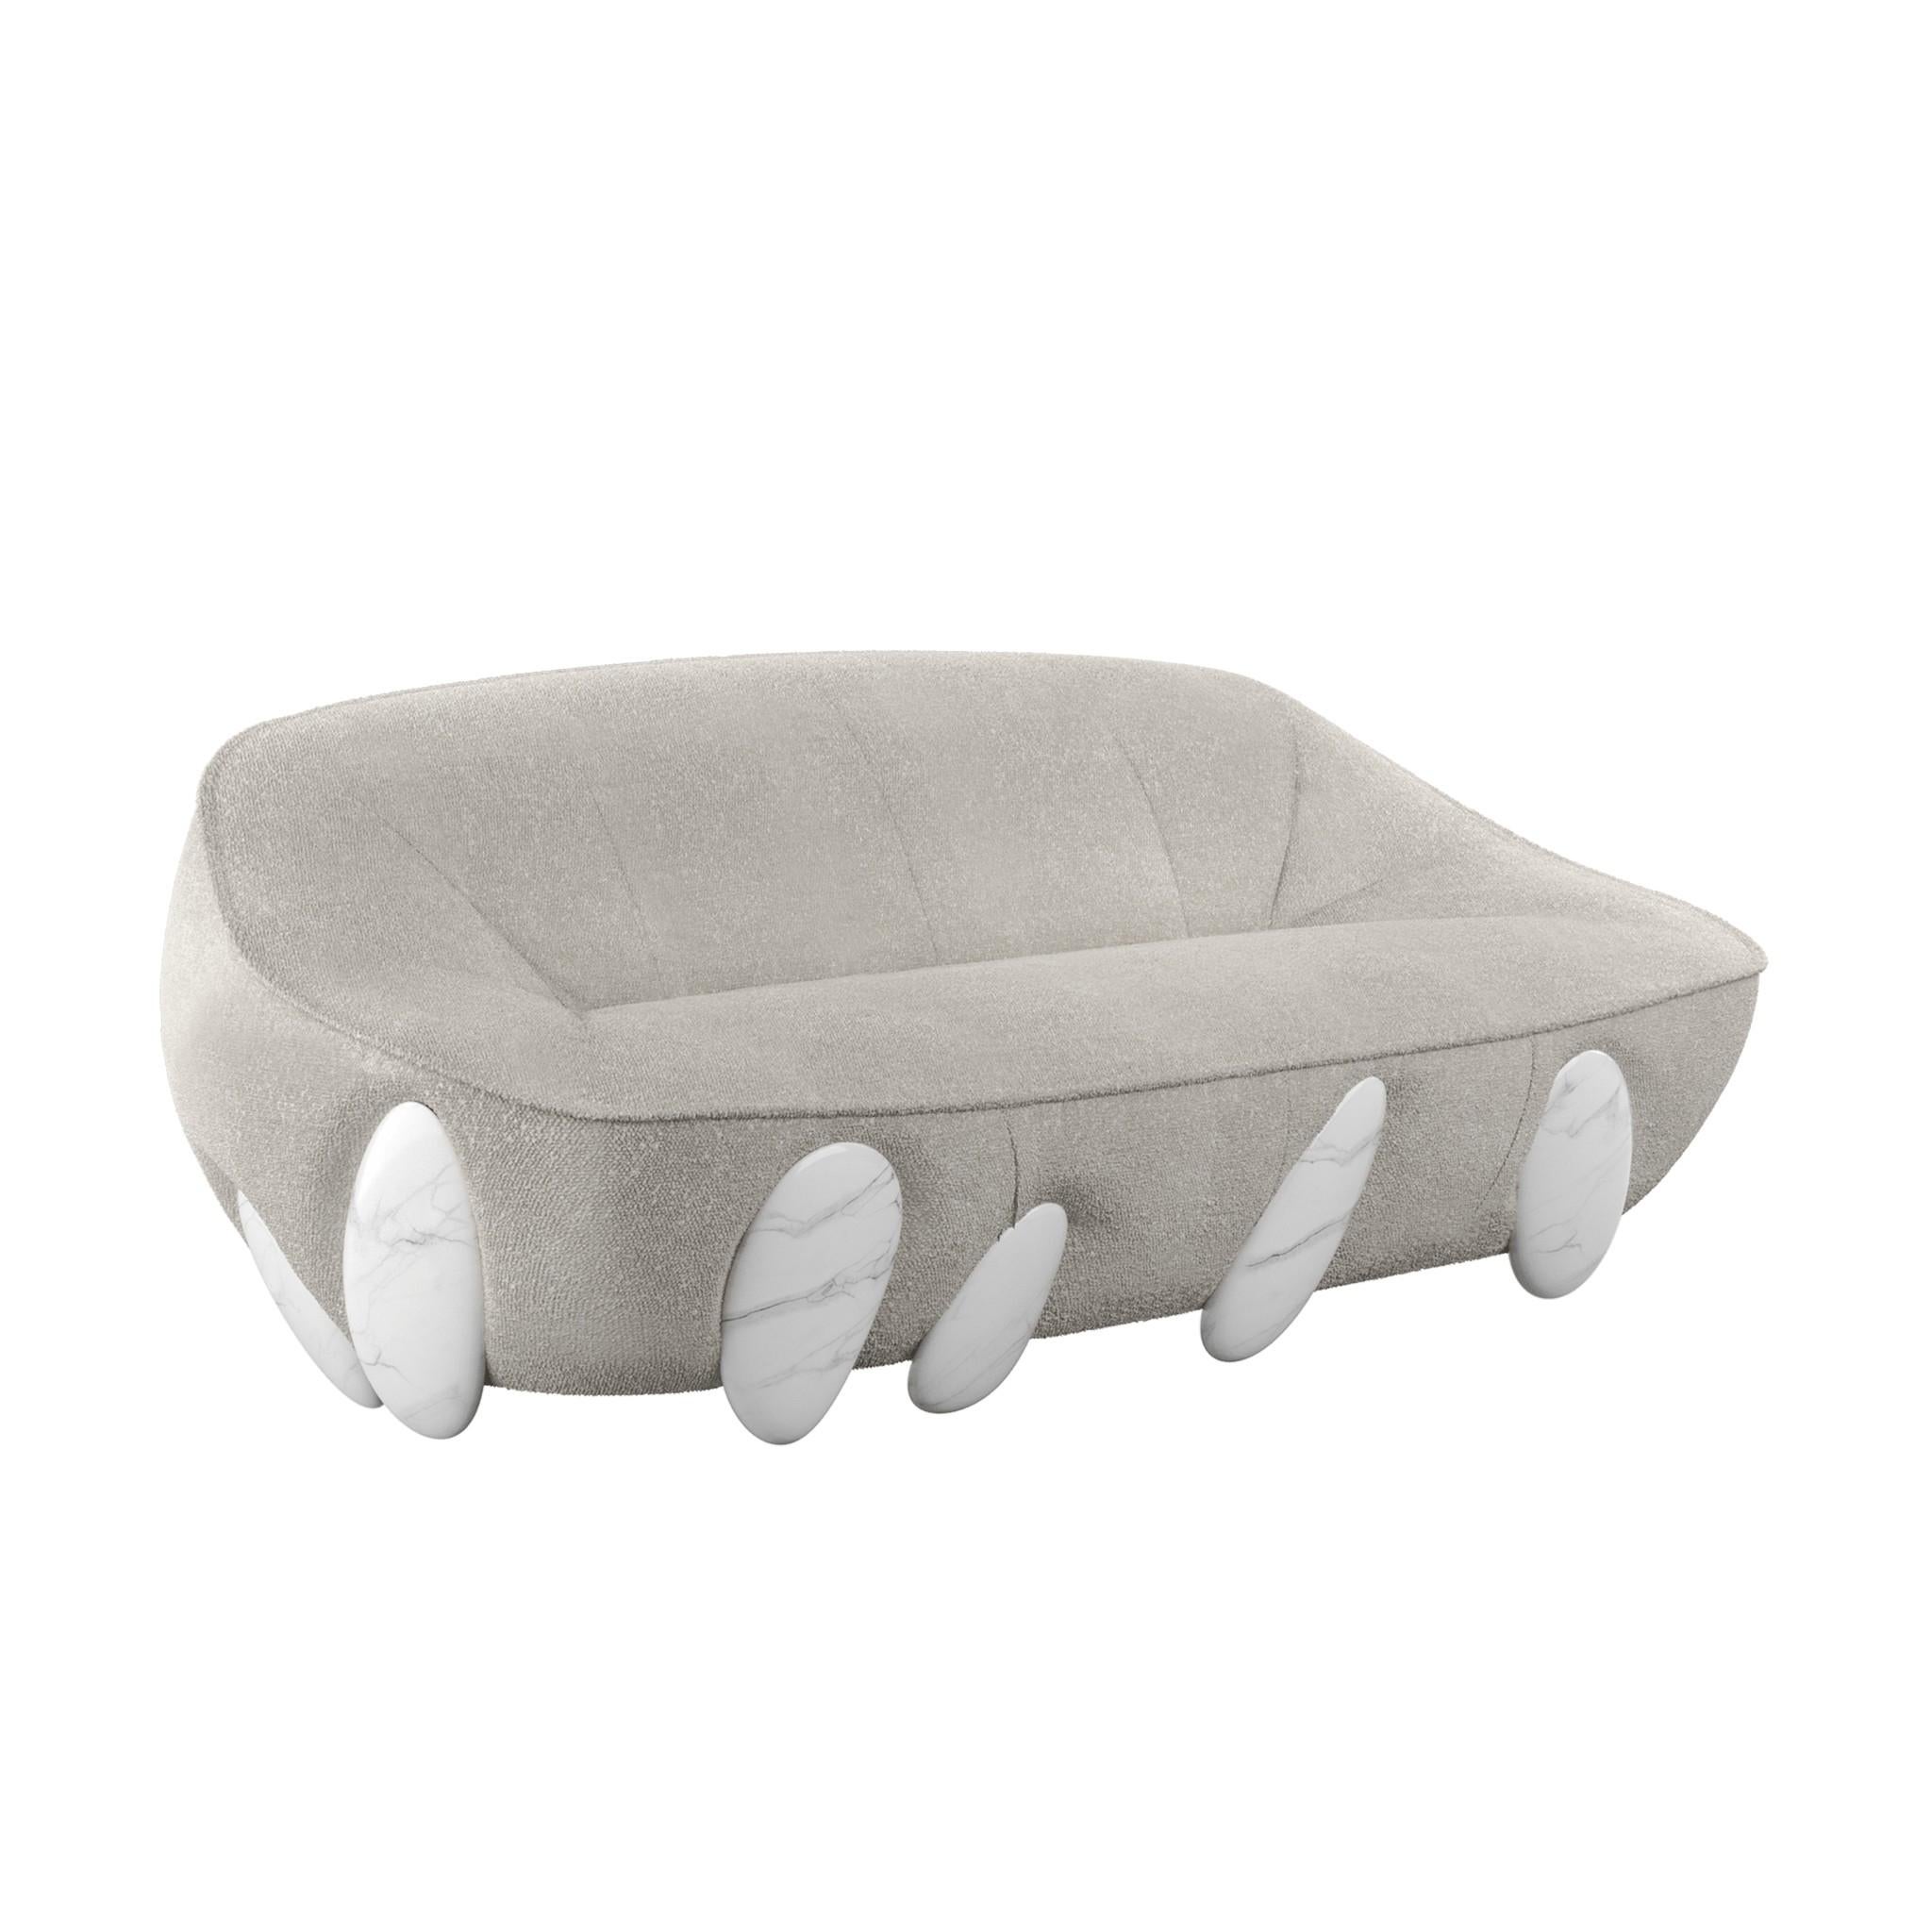 Le canapé Lunarys est un canapé de style contemporain qui se caractérise par une esthétique glamour. Il s'agit d'un canapé moderne exceptionnel, revêtu de bouclette et doté de pieds en marbre brillant peint à la main, qui surprend par sa forte